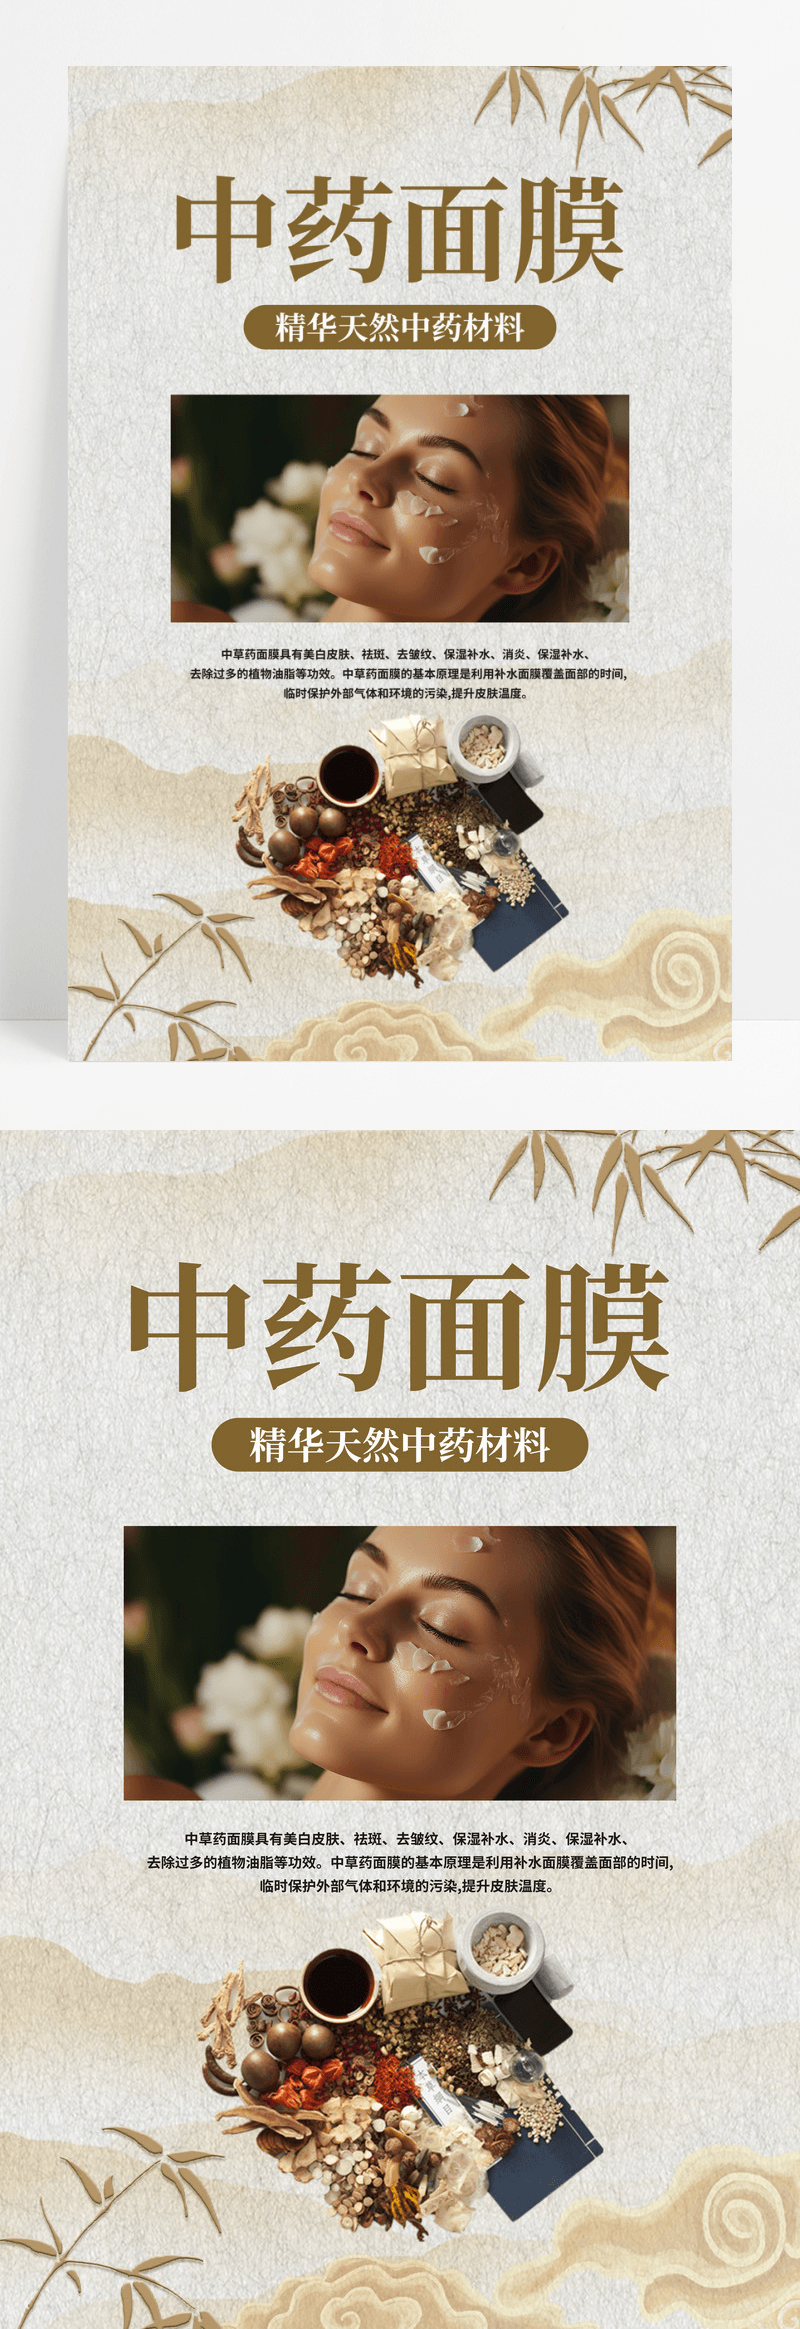 创意中国风美容美肤中药面膜保护肌肤宣传海报